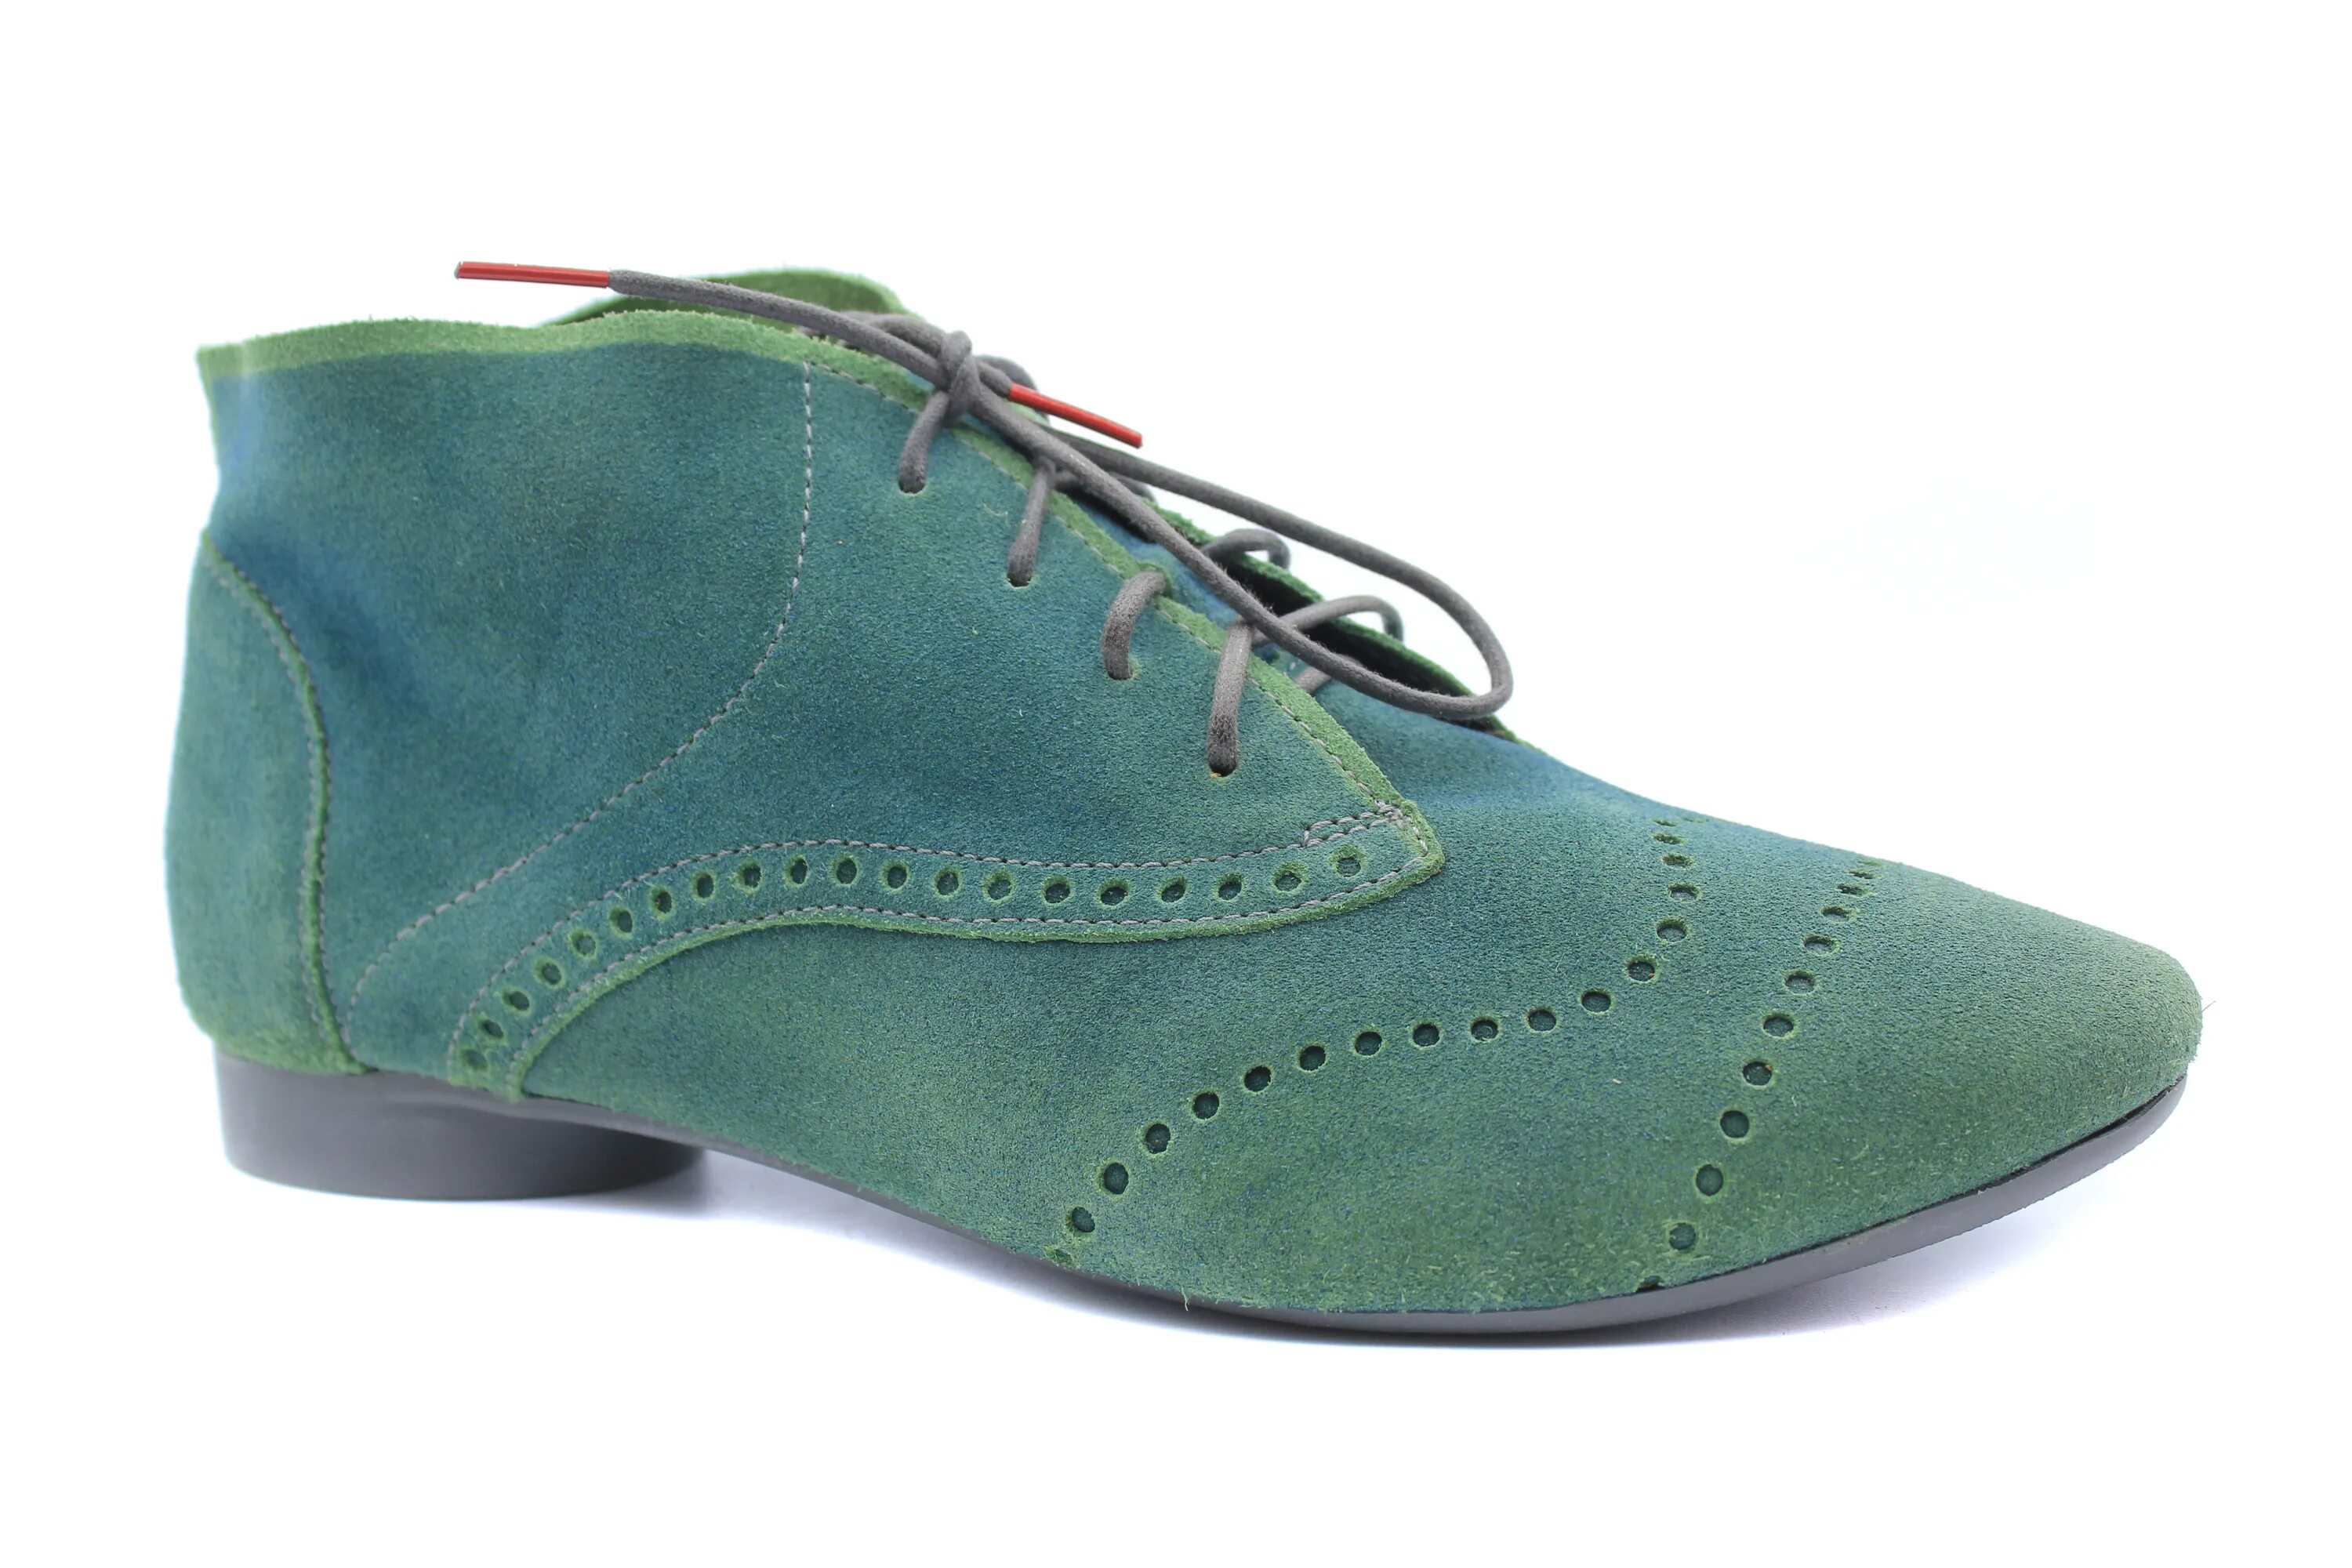 Обувь green. Туфли Пауль Грин. Пол Грин обувь. Ботинки Green Stride. Paul Green Munchen ботильоны.